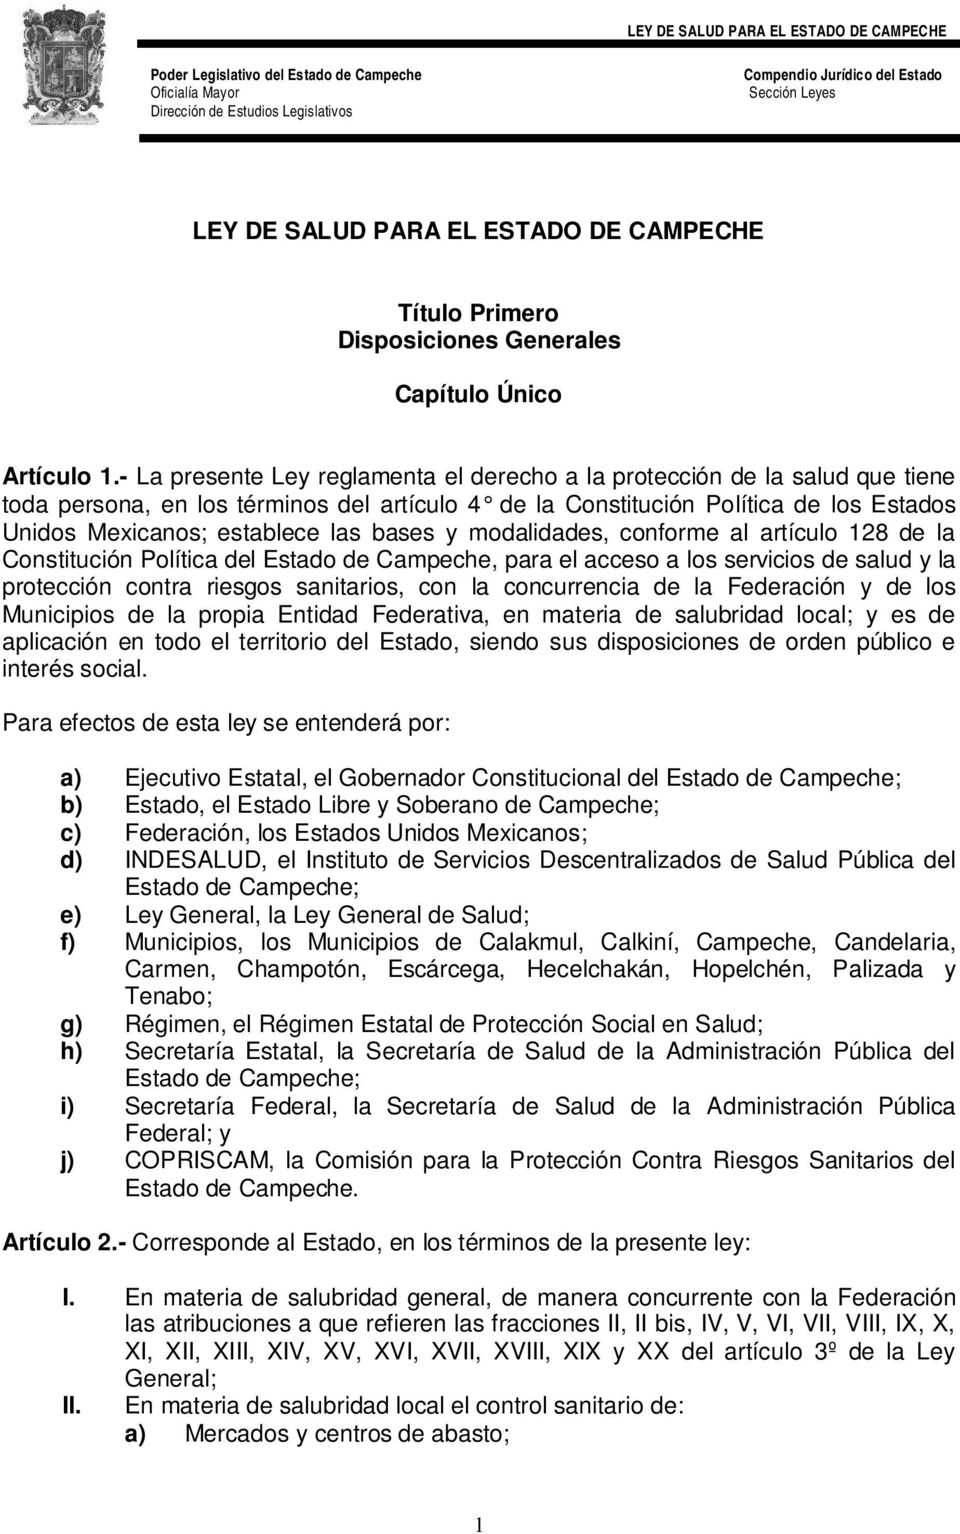 bases y modalidades, conforme al artículo 128 de la Constitución Política del Estado de Campeche, para el acceso a los servicios de salud y la protección contra riesgos sanitarios, con la